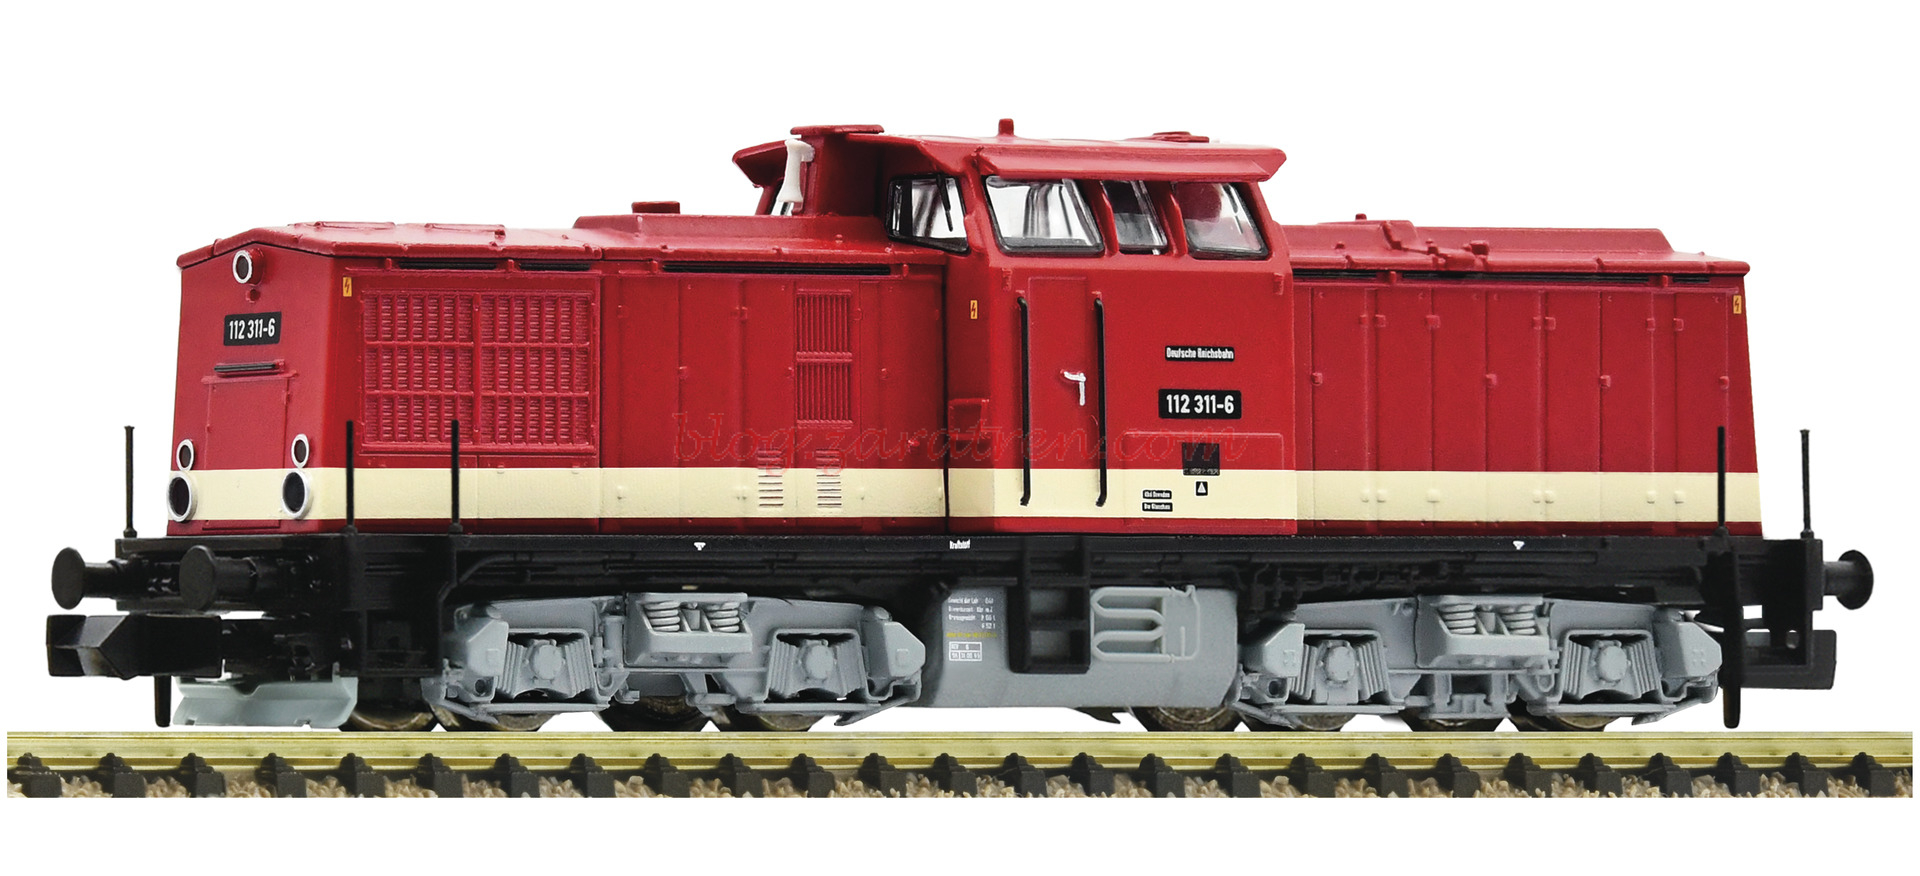 Fleischmann – Locomotora diésel 112 311-6, DDR, Analógica, Escala N, Ref: 7360006